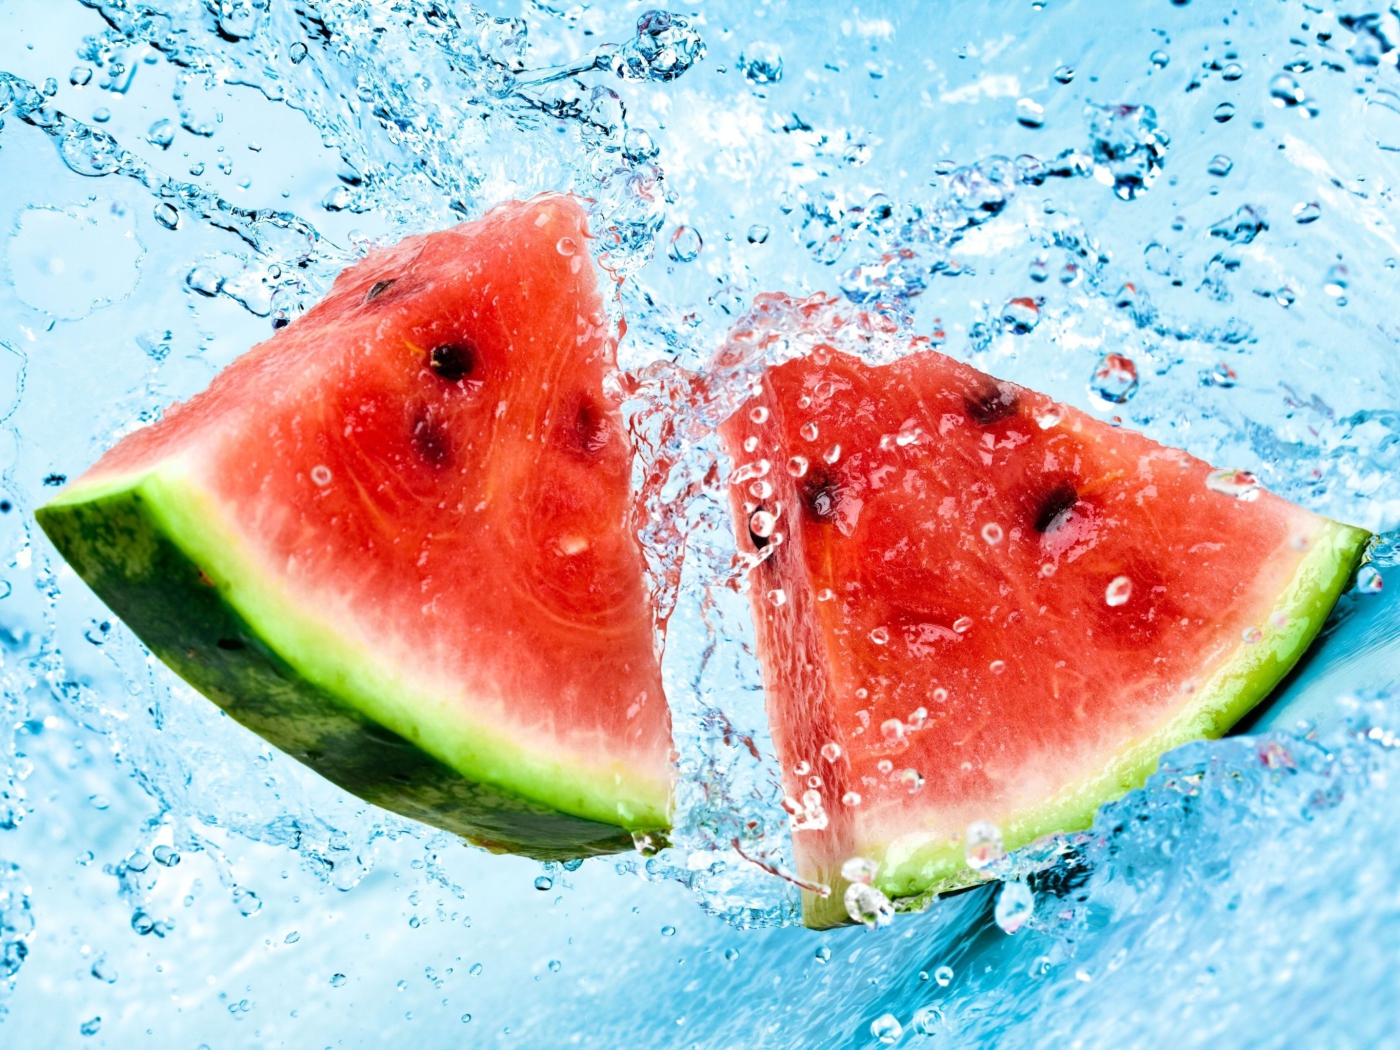 Обои Watermelon In Water 1400x1050